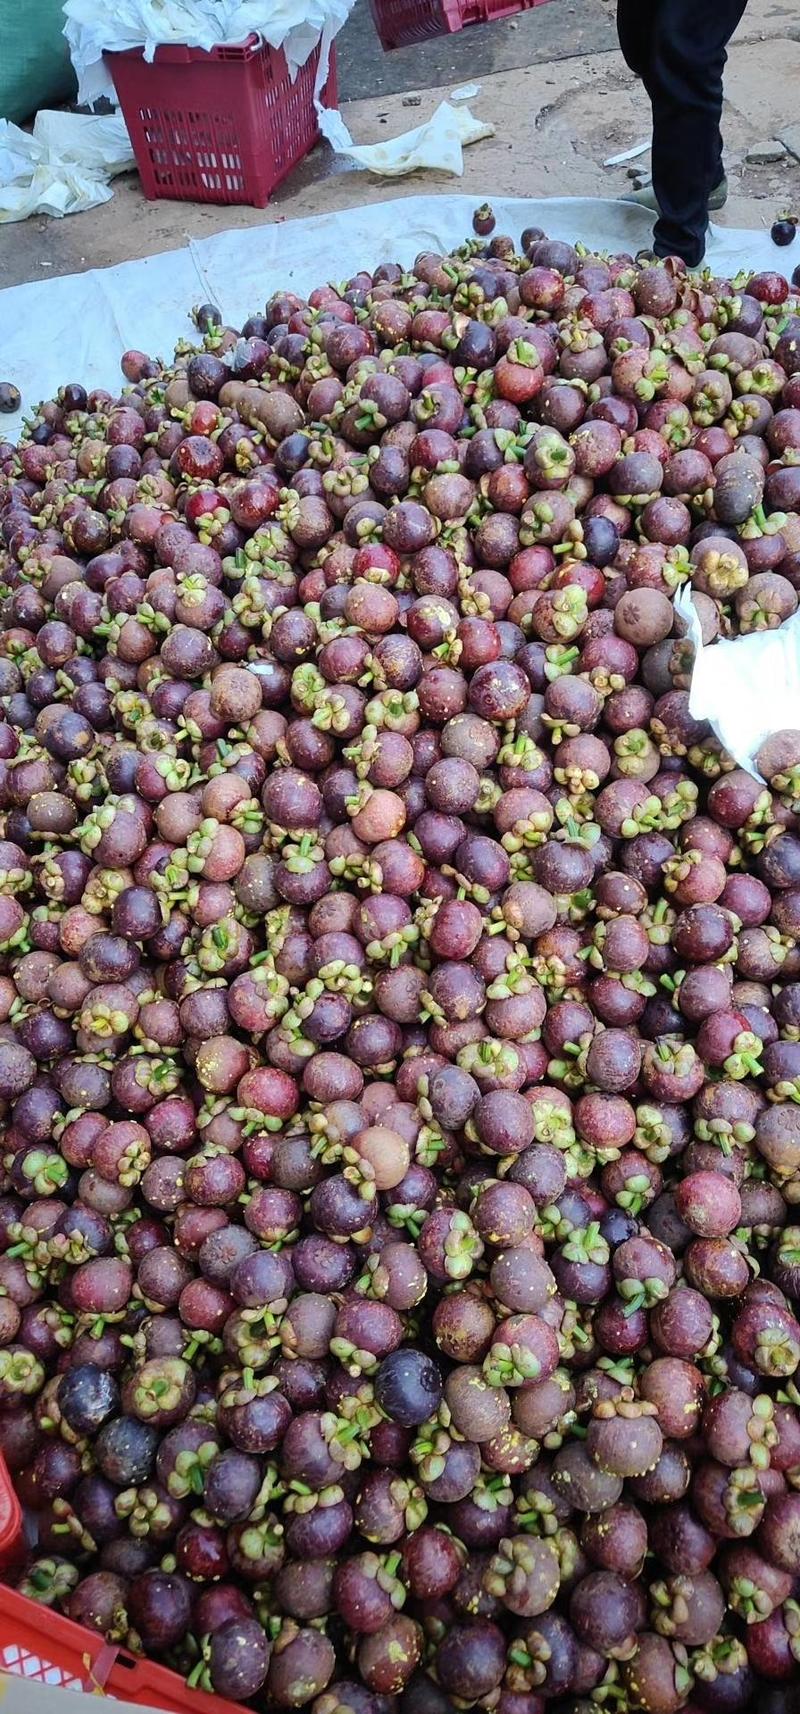 泰国进口山竹新鲜水果批发5斤应季采包邮整箱当季新鲜水果